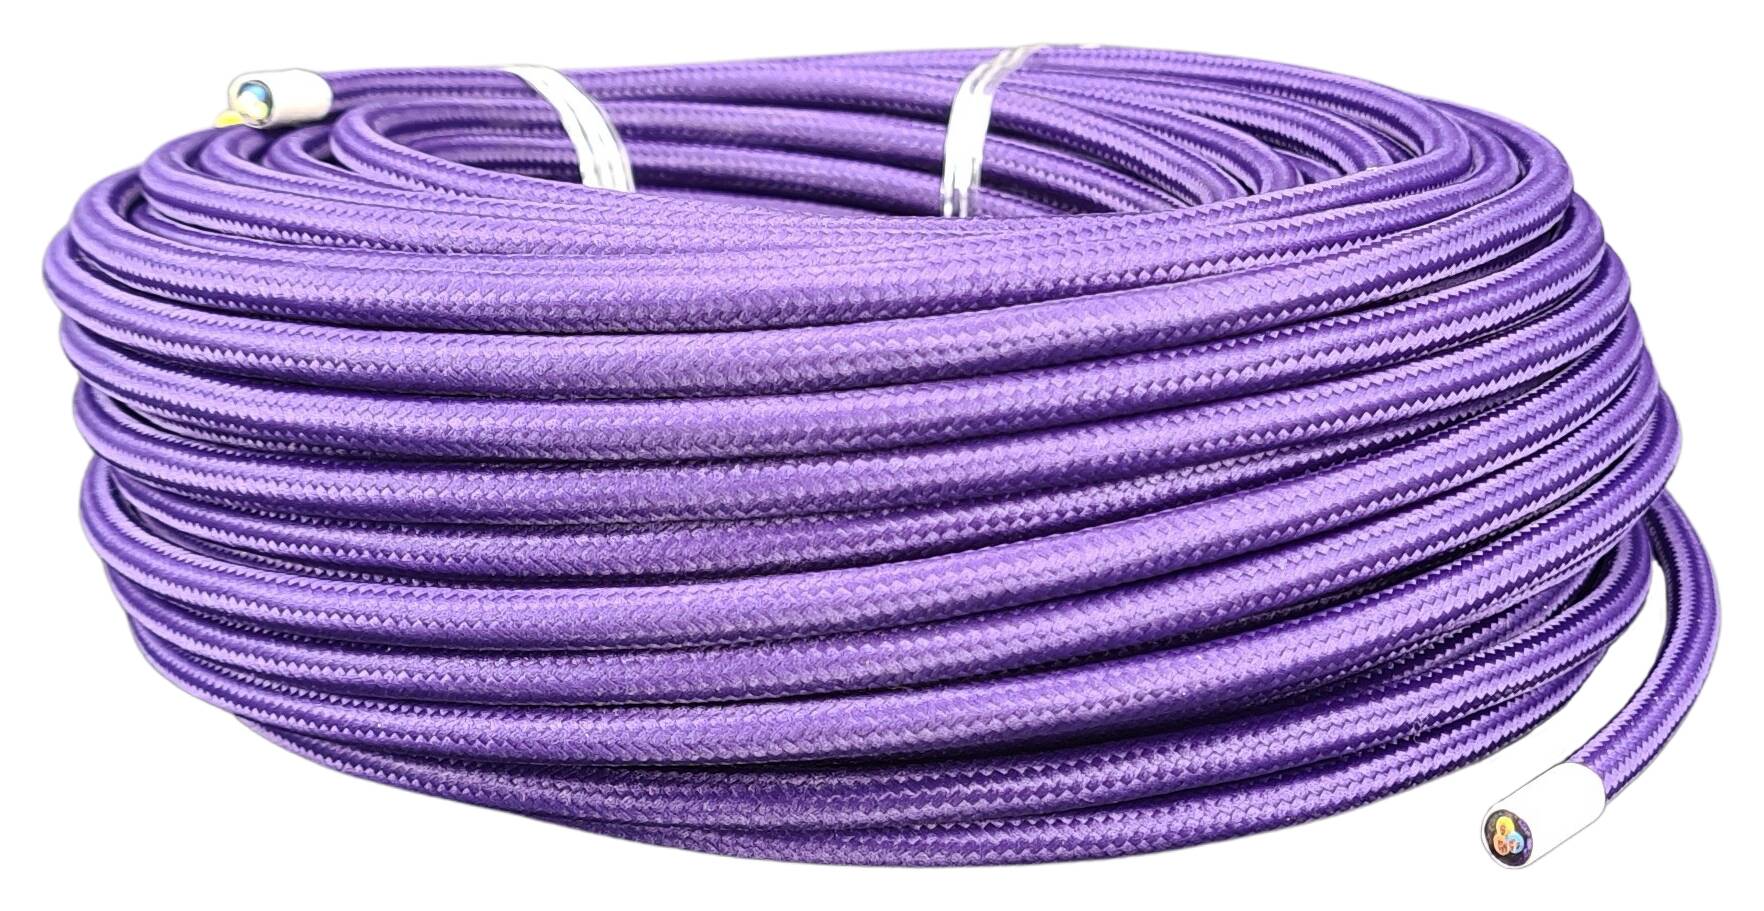 Kabel 3G 0,75 H03VV-F textilummantelt RAL 4000 violett